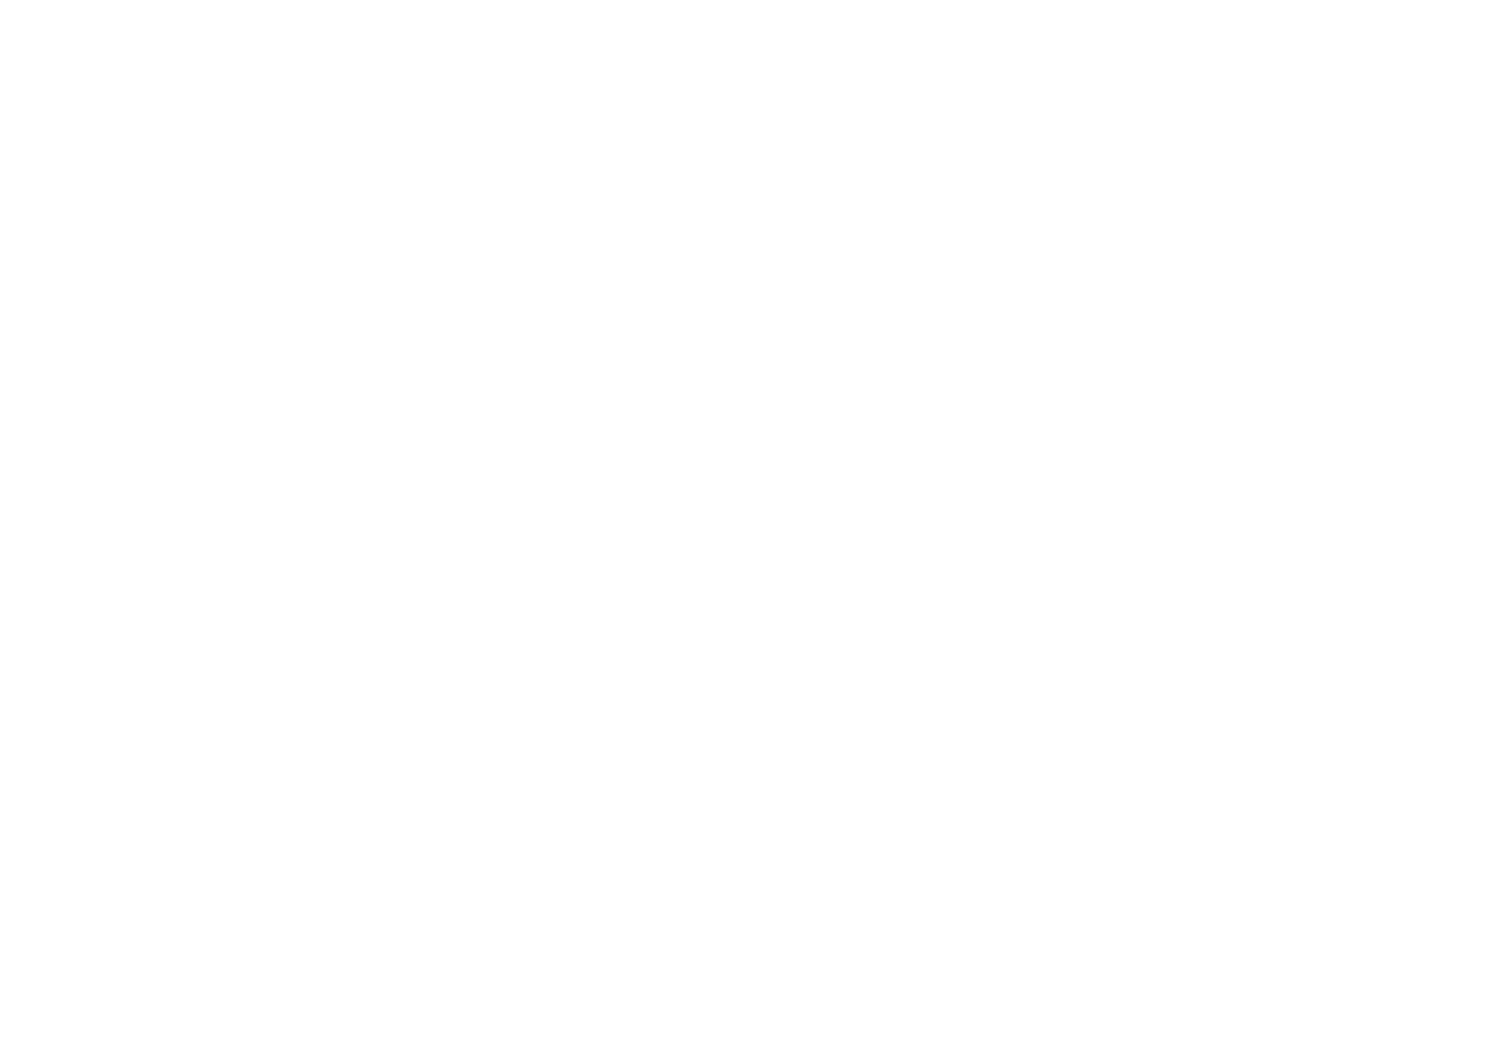 networx now